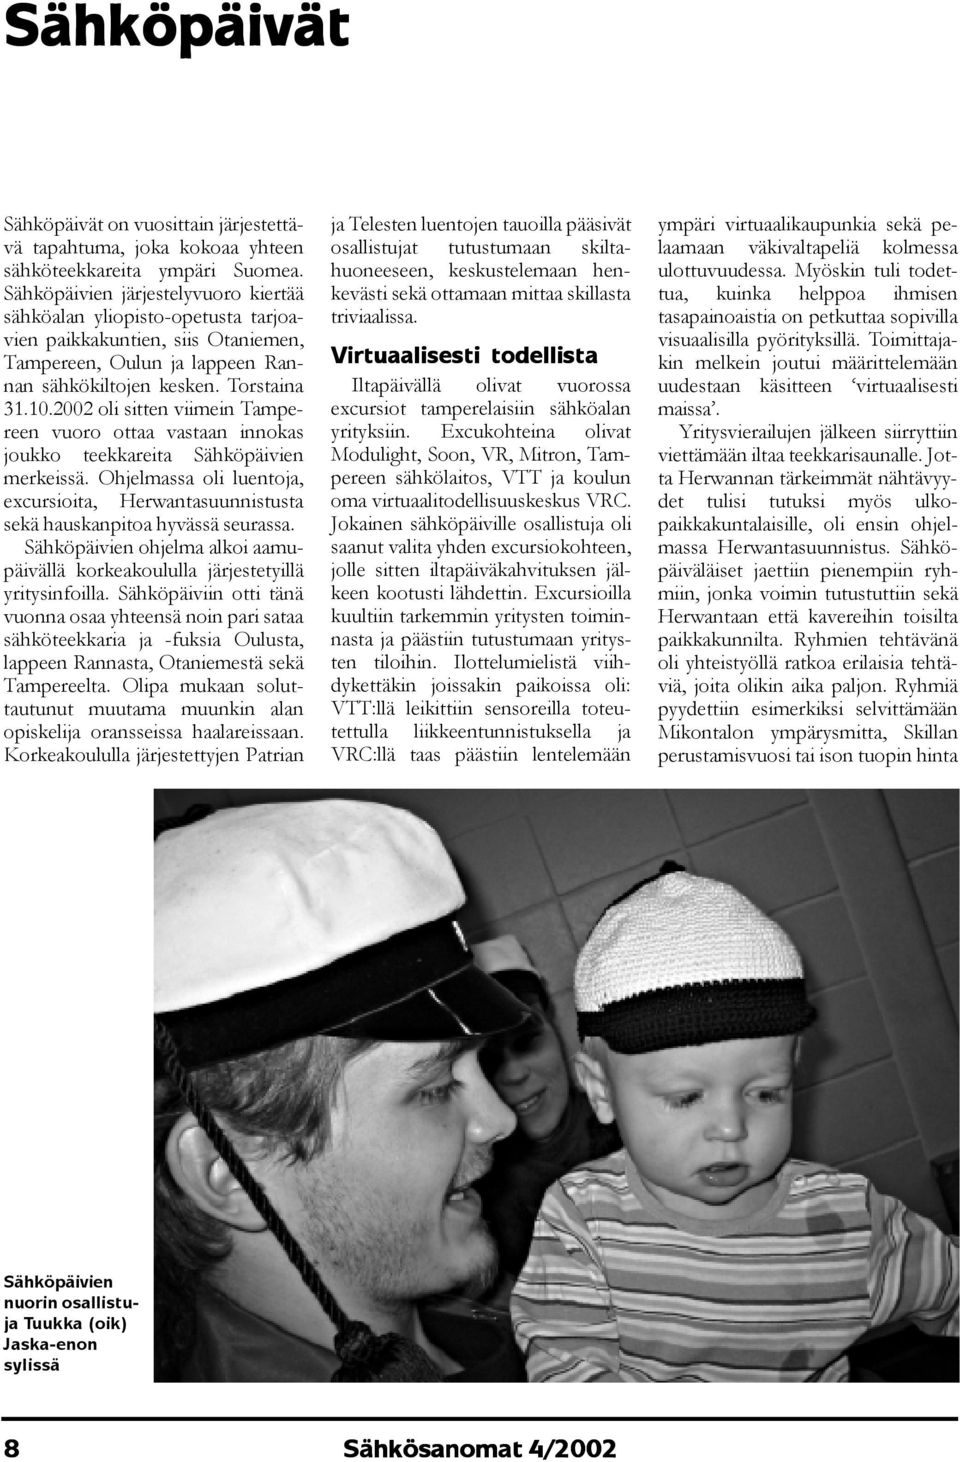 2002 oli sitten viimein Tampereen vuoro ottaa vastaan innokas joukko teekkareita Sähköpäivien merkeissä. Ohjelmassa oli luentoja, excursioita, Herwantasuunnistusta sekä hauskanpitoa hyvässä seurassa.